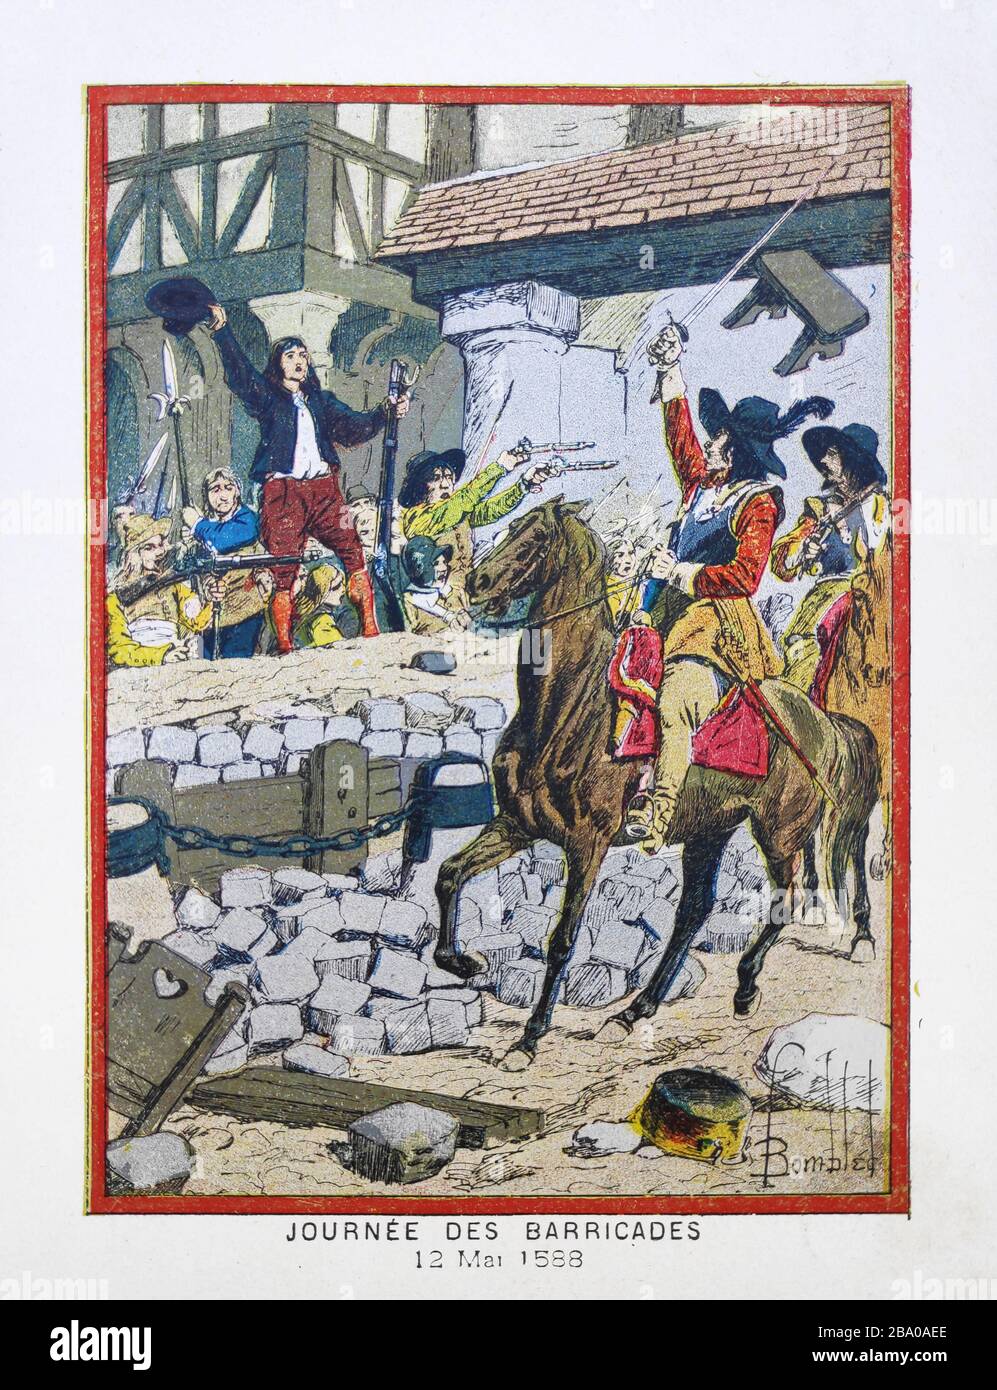 Ilustración antigua por 'L. Bombardeó' sobre el día de las barricadas durante las guerras francesas de religión impresas a finales del siglo 19. Foto de stock